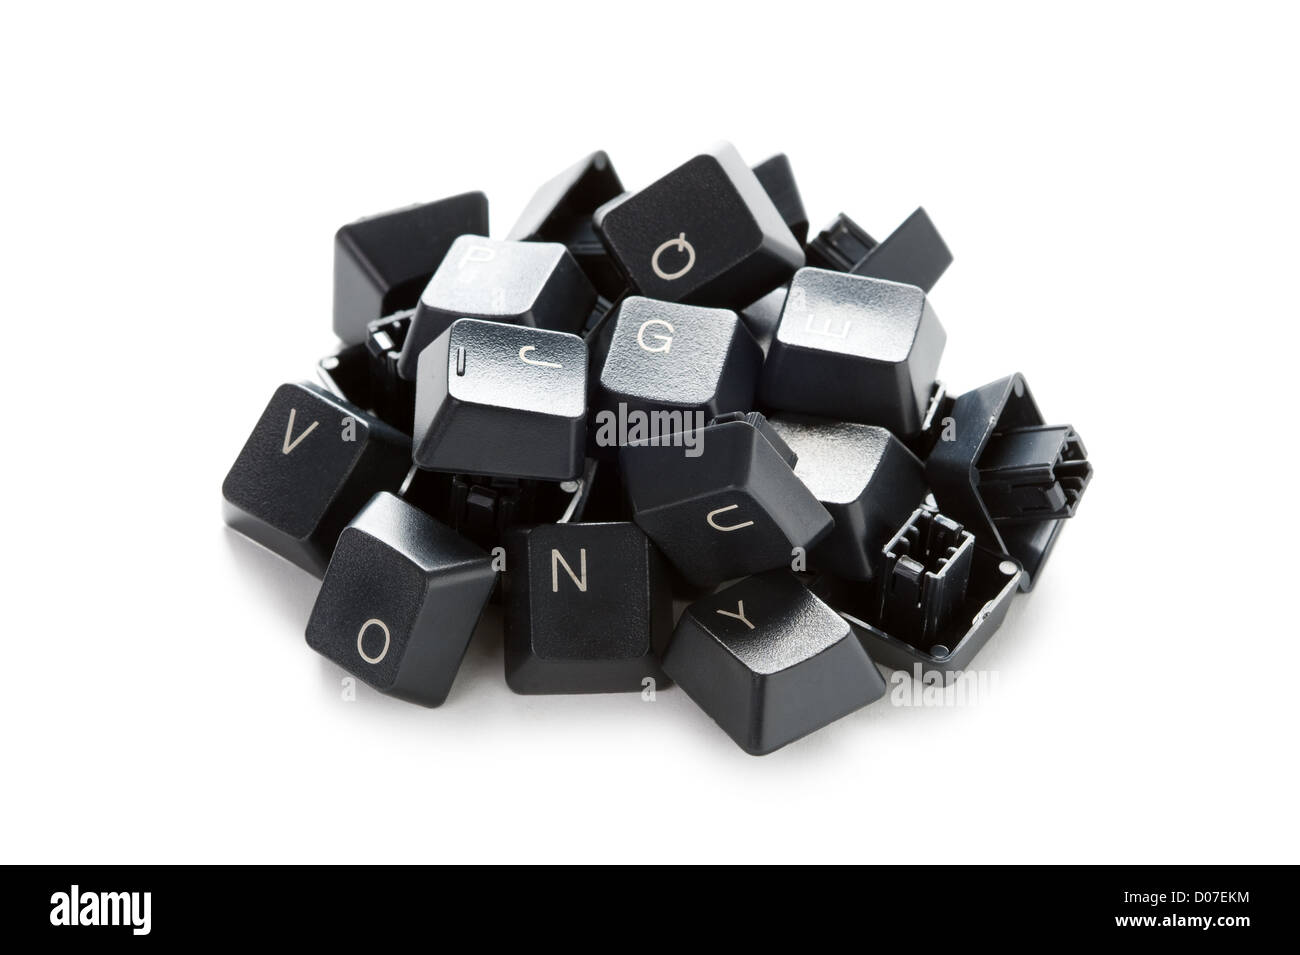 ein Haufen von veraltet, nutzlos, defekte Computer-Tastatur-Tasten isoliert auf weißem Hintergrund Stockfoto